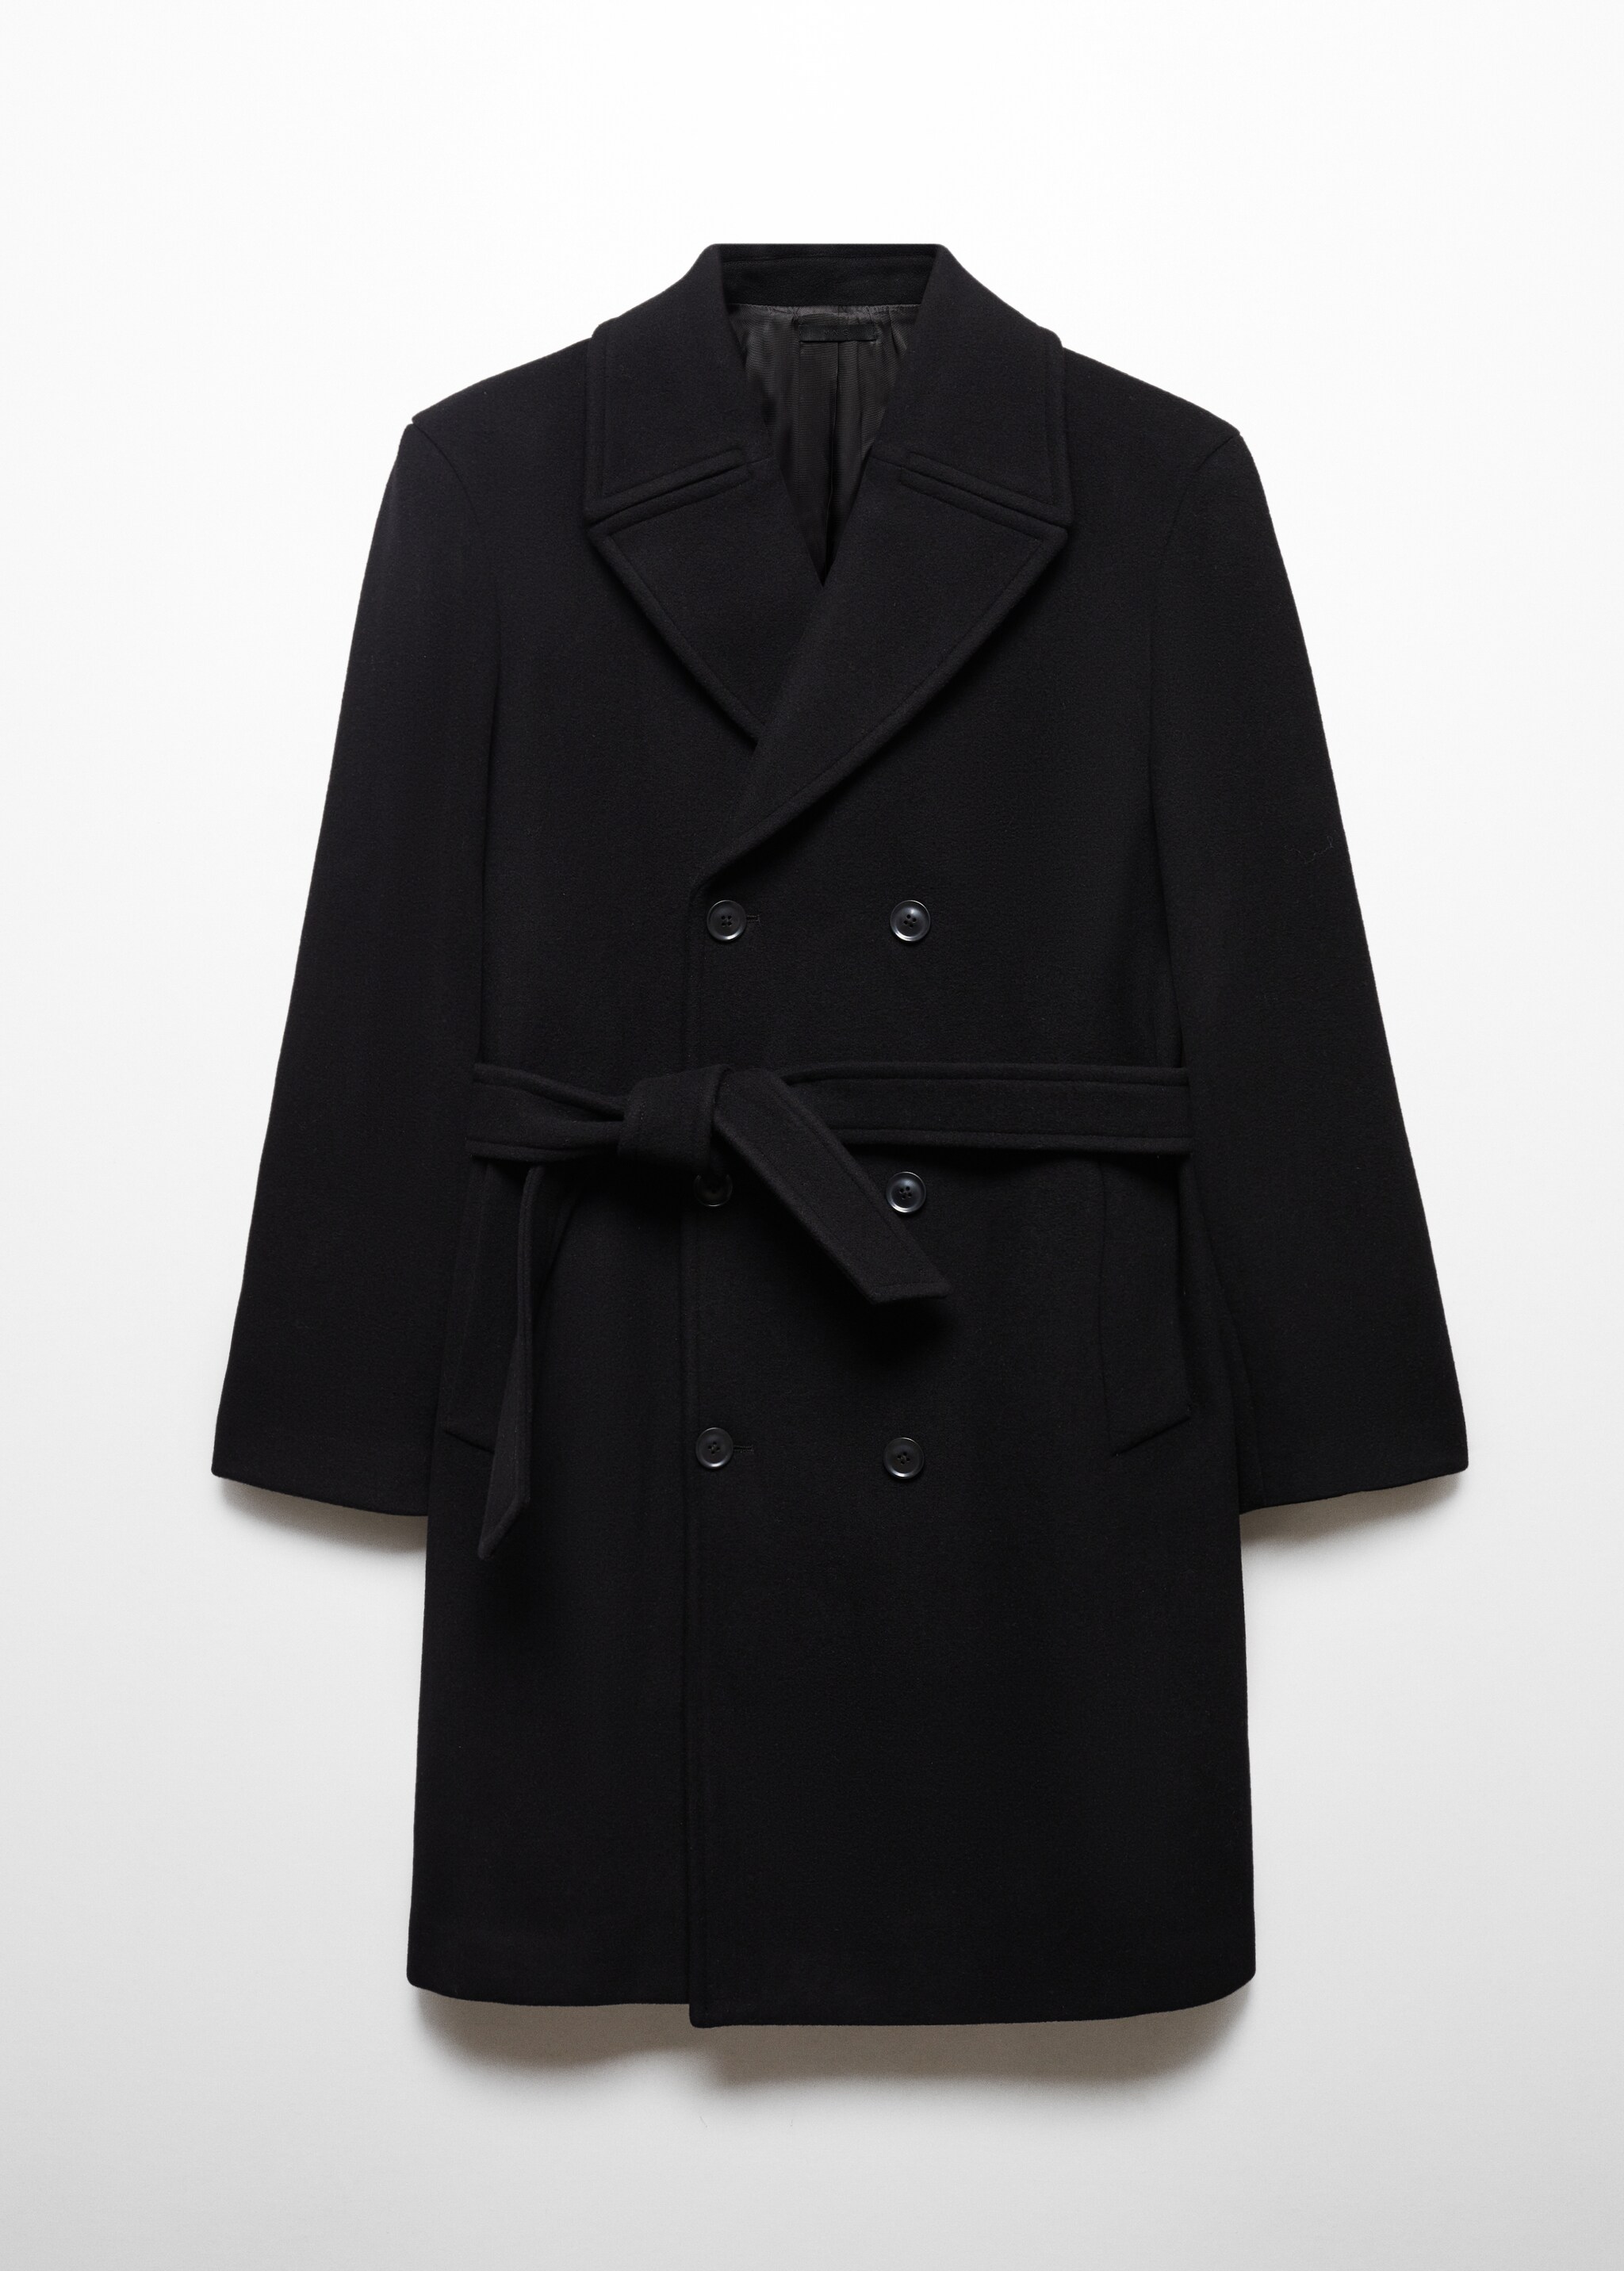 Cappotto handmade lana cintura - Articolo senza modello